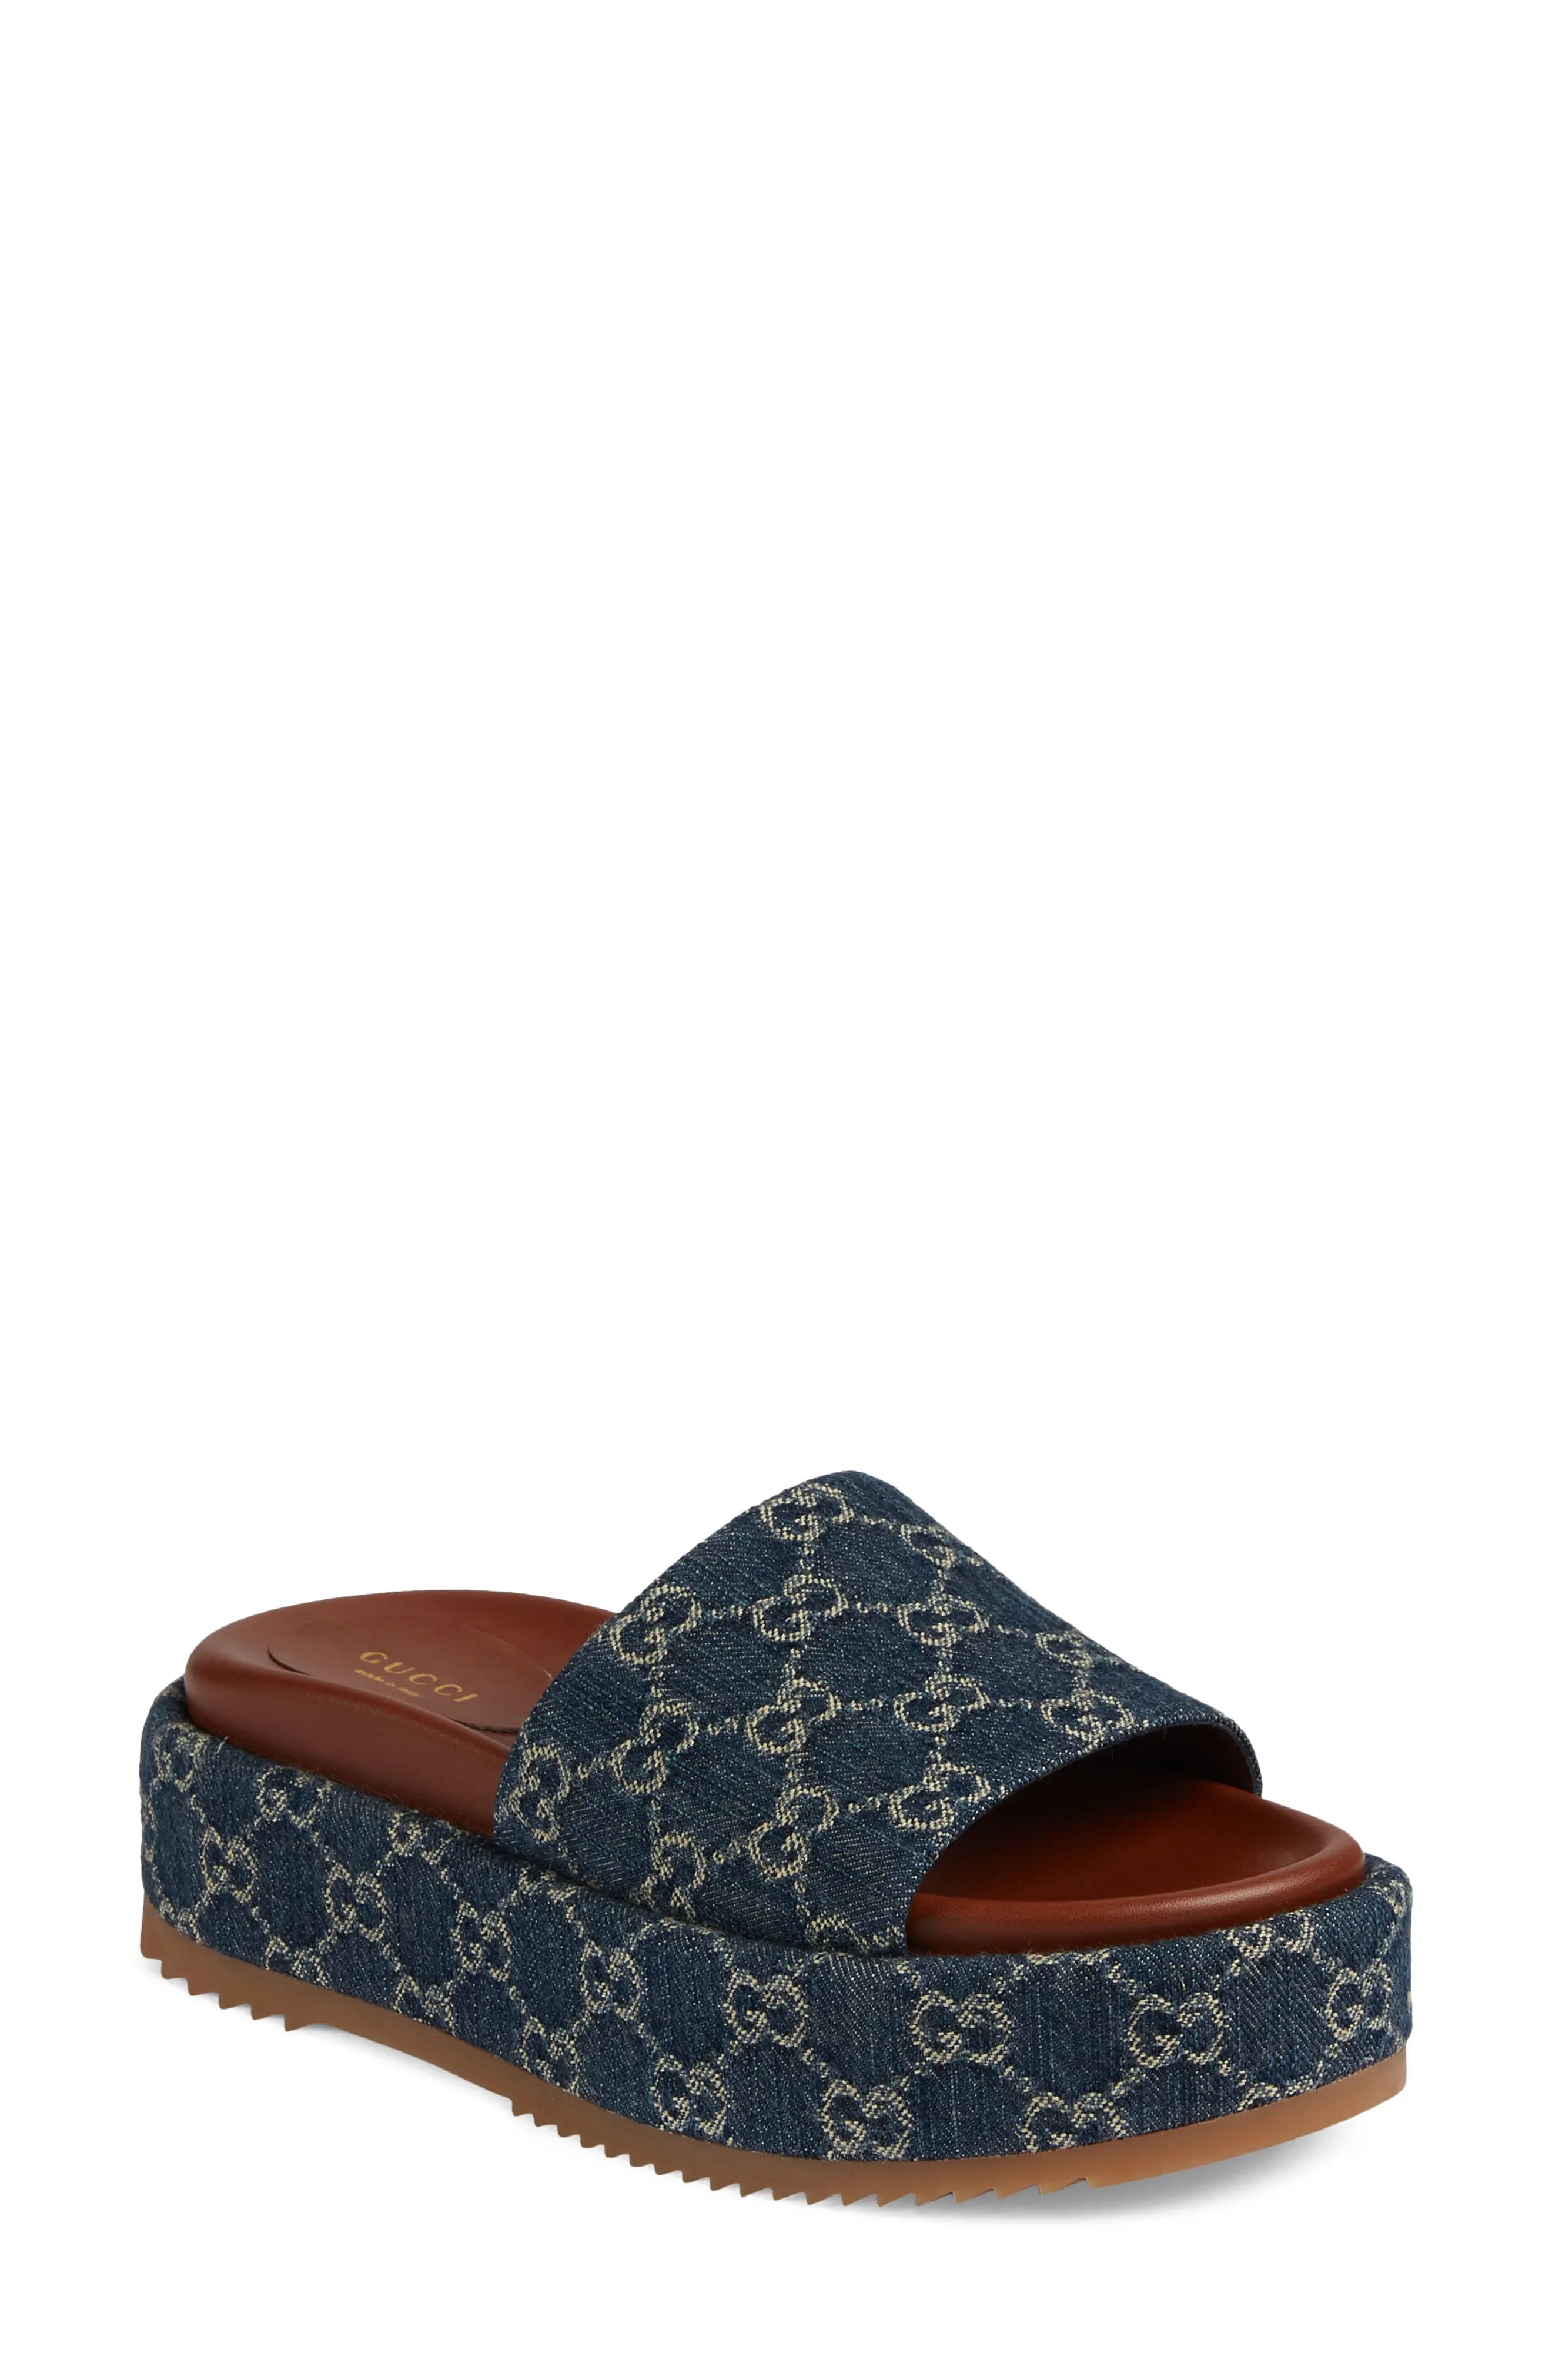 Gucci Angelina GG Logo Platform Slide Sandal, Size 8.5Us in Blue Tea at Nordstrom | Nordstrom